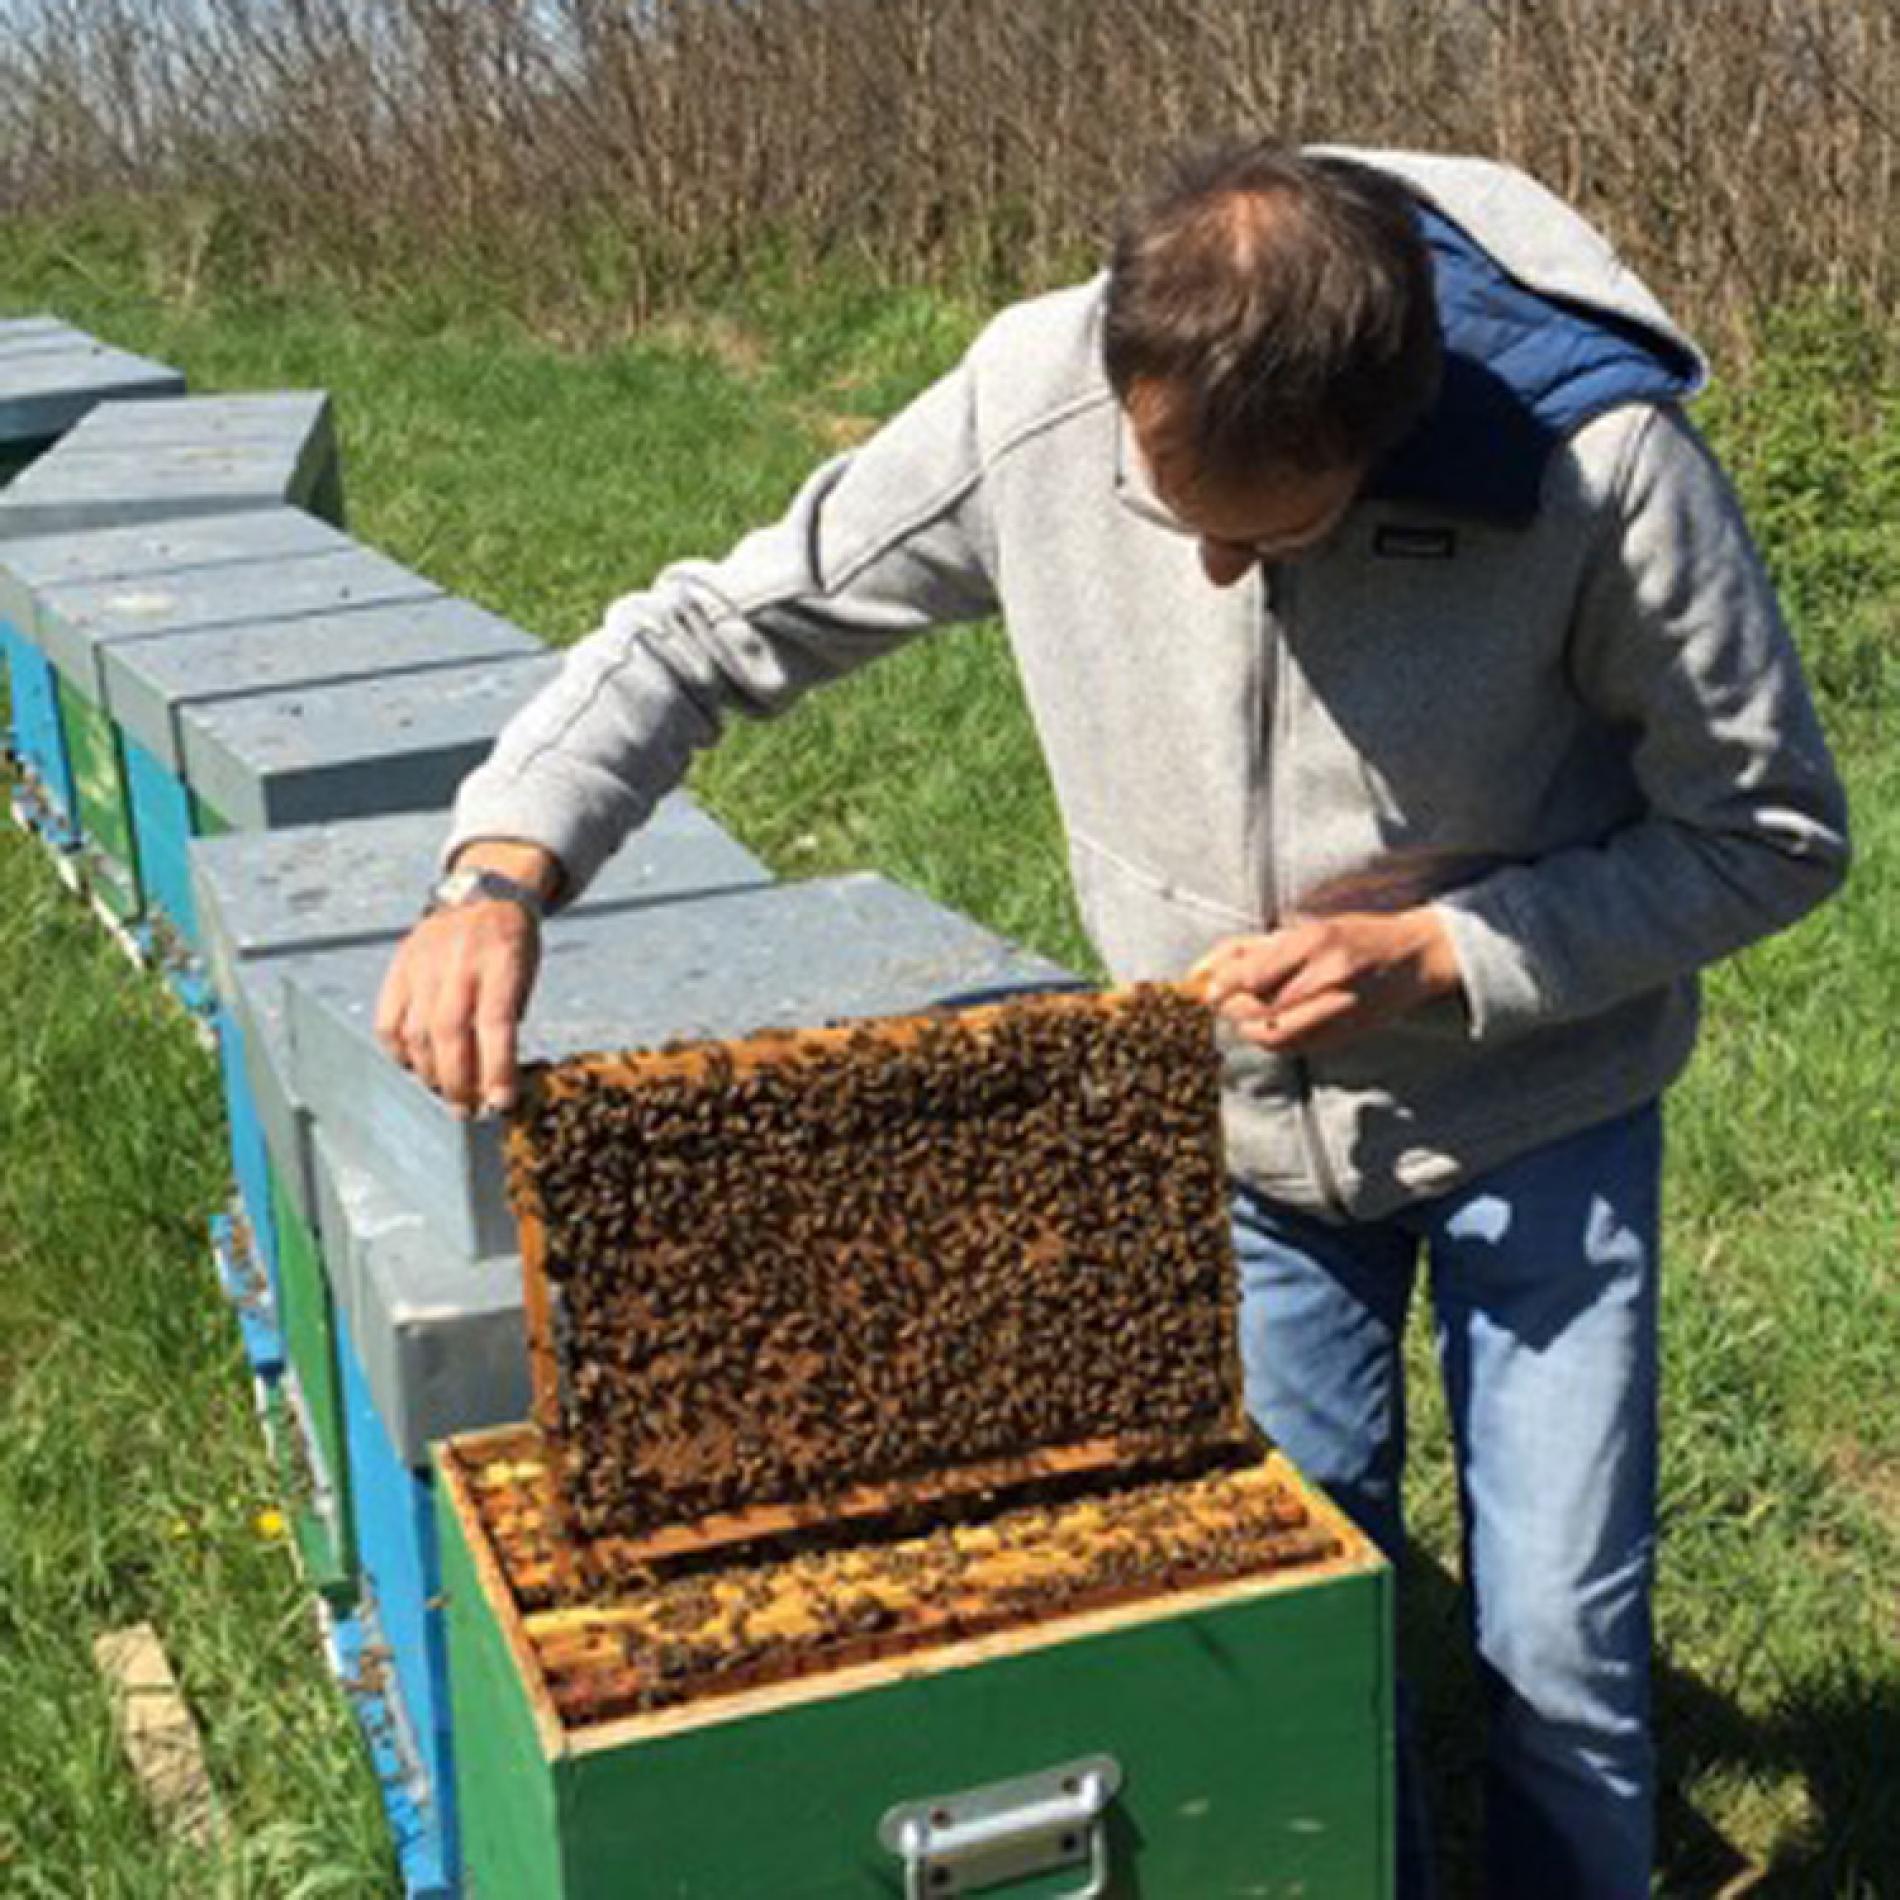 Apicoltore derubato: nella notte portate via un milione di api